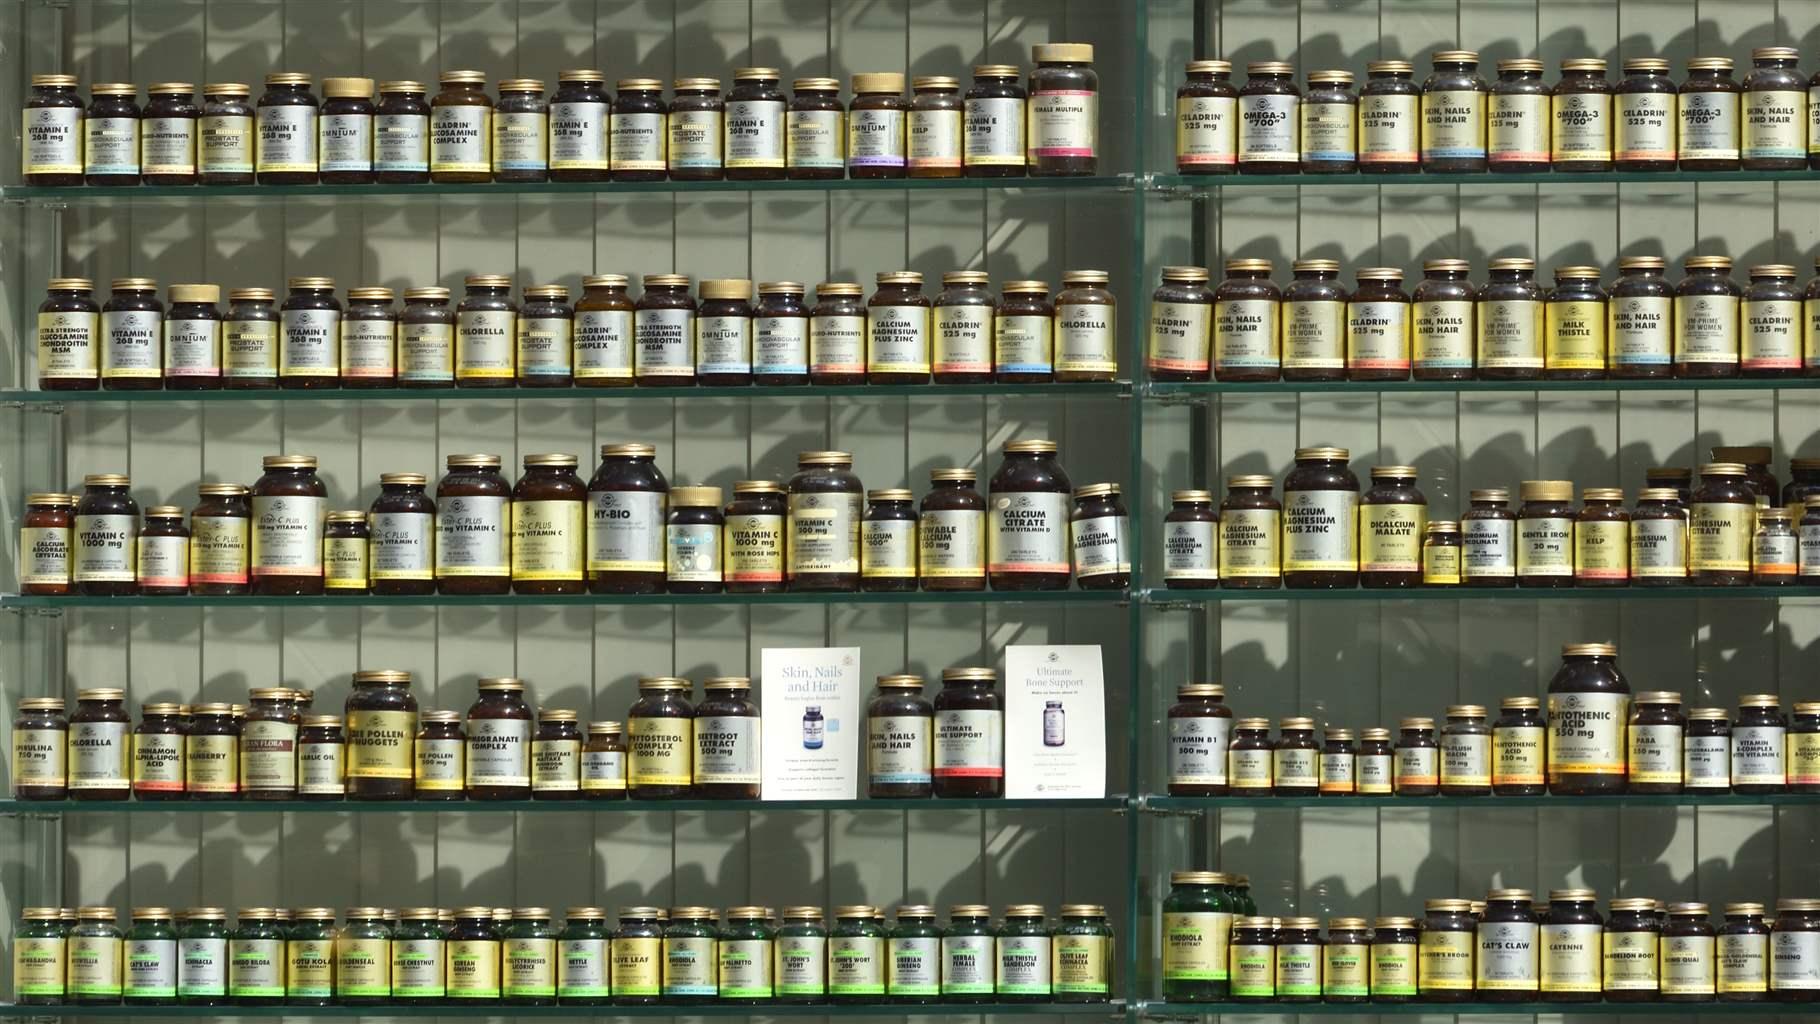 Supplement bottles on shelf